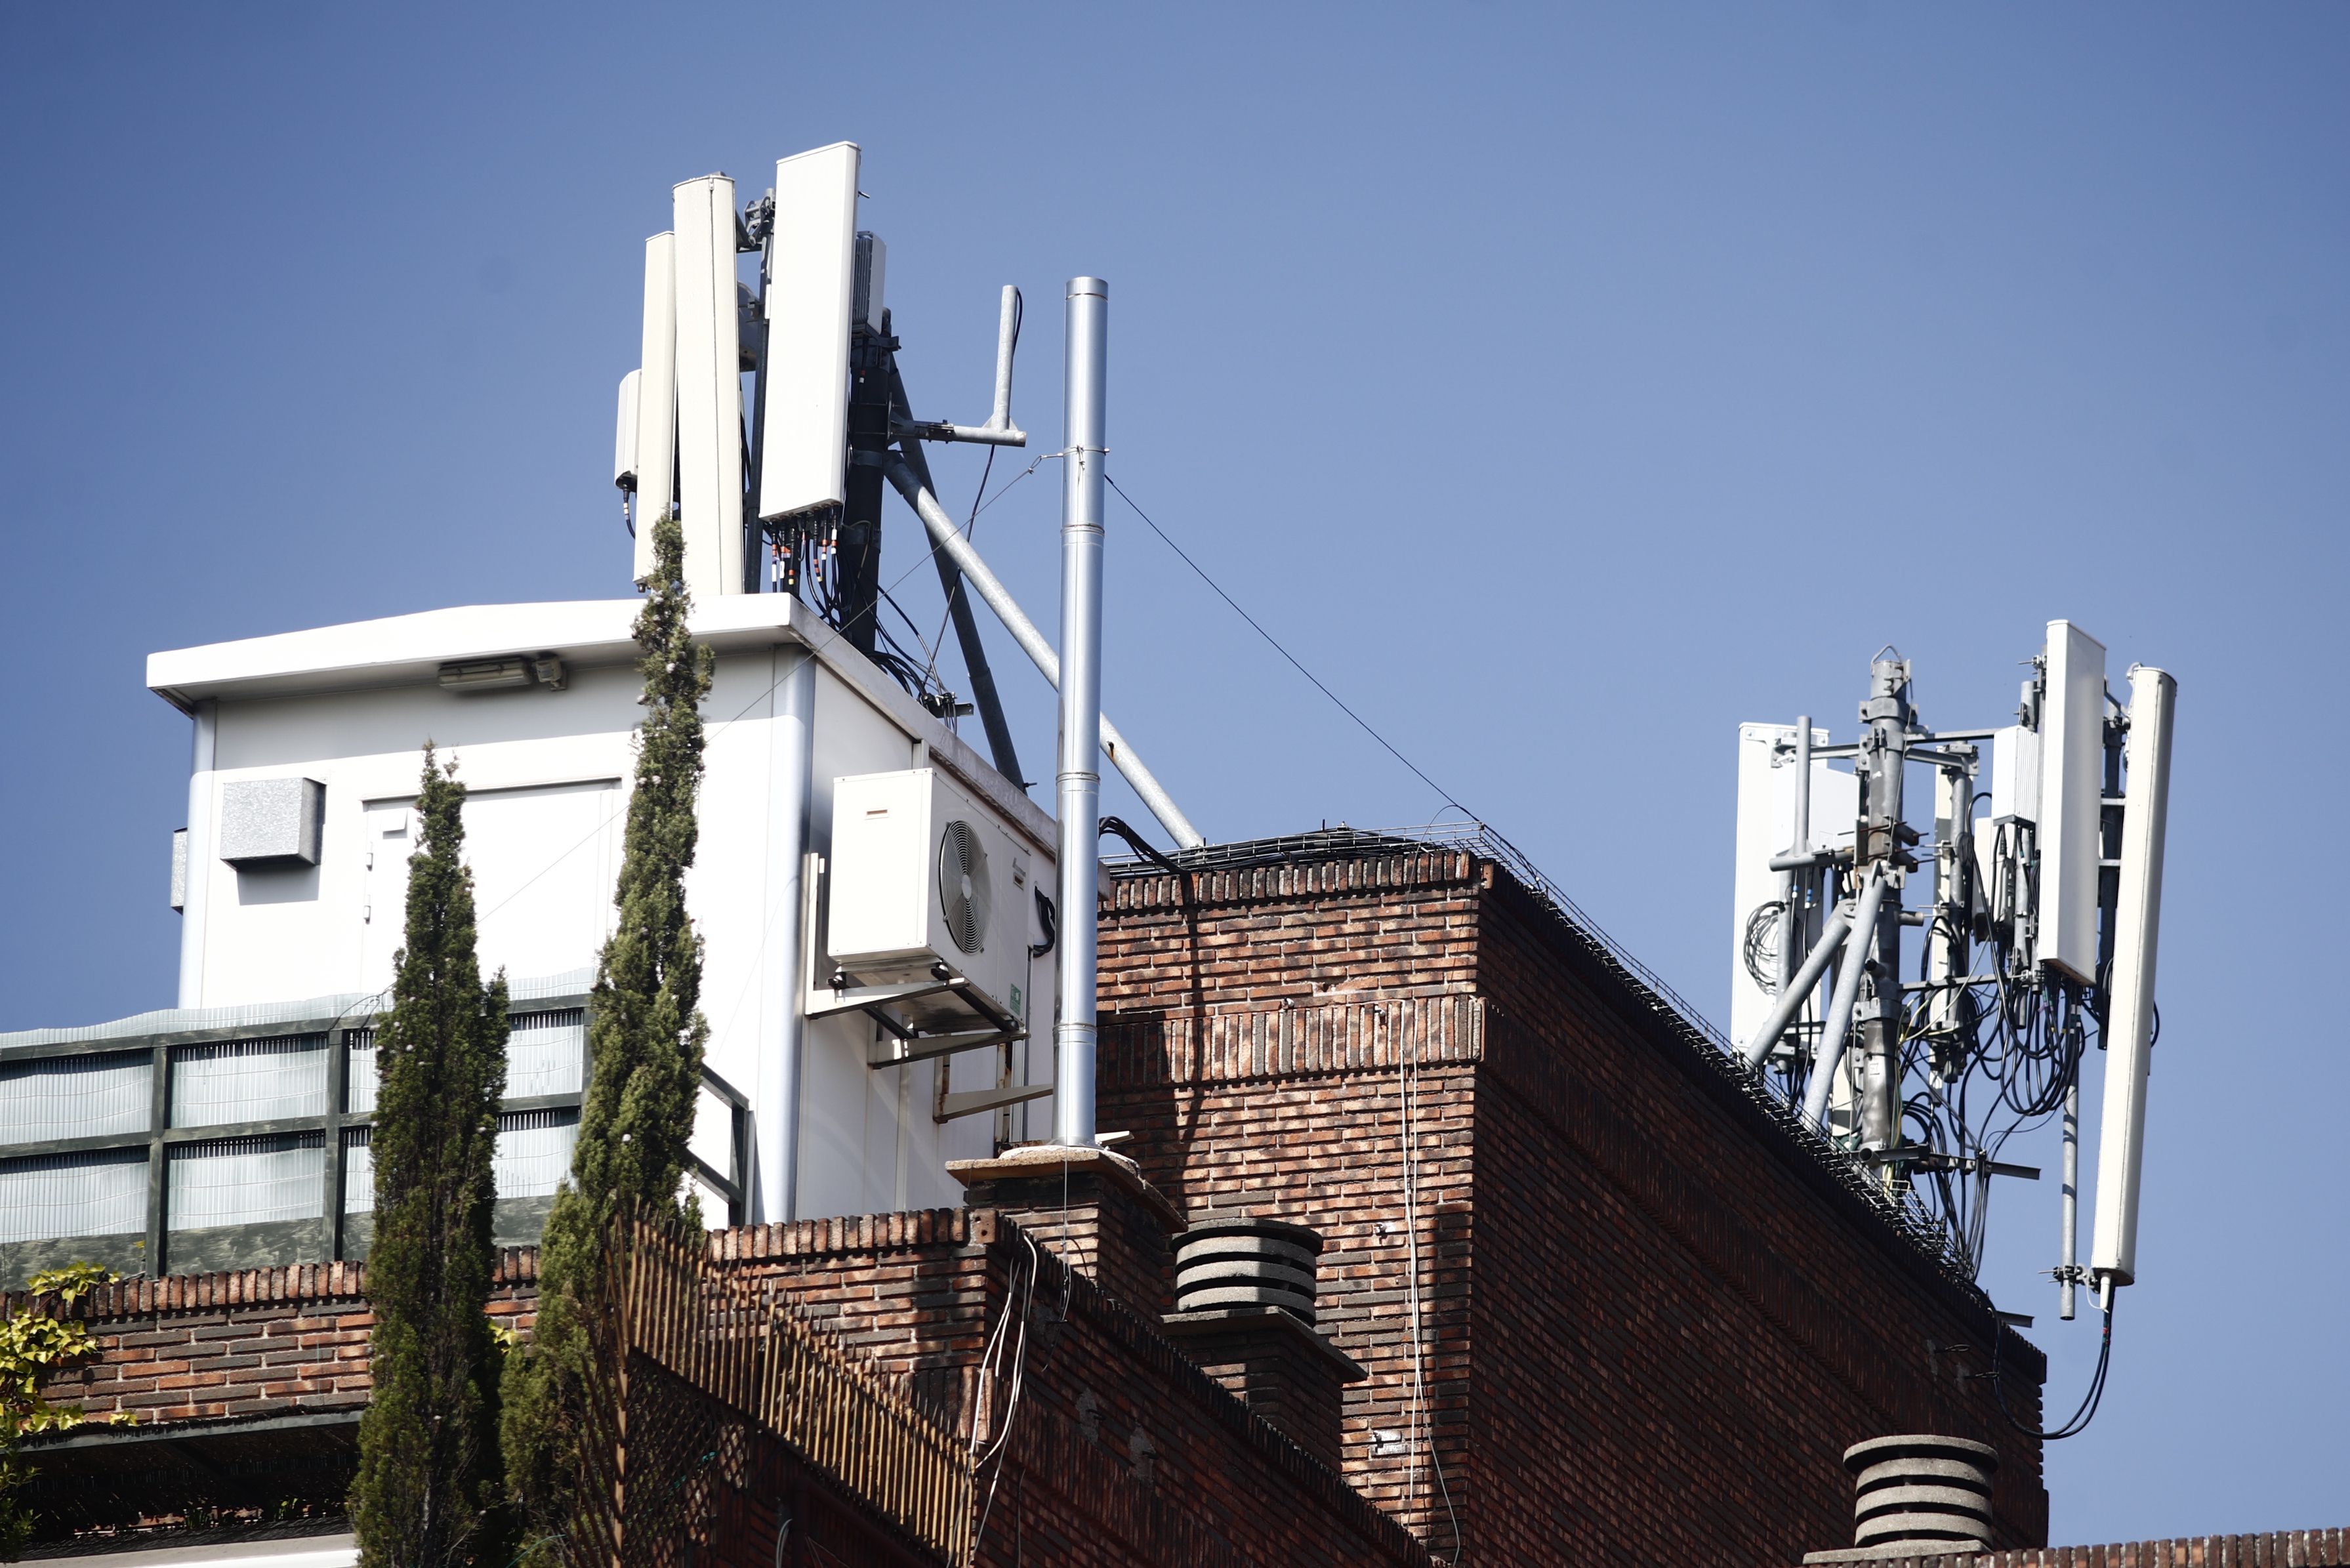 17/07/2019 Imagen de antenas de telefonía en el tejado de una casa en la ciudad de Madrid. POLITICA Eduardo Parra - Europa Press 